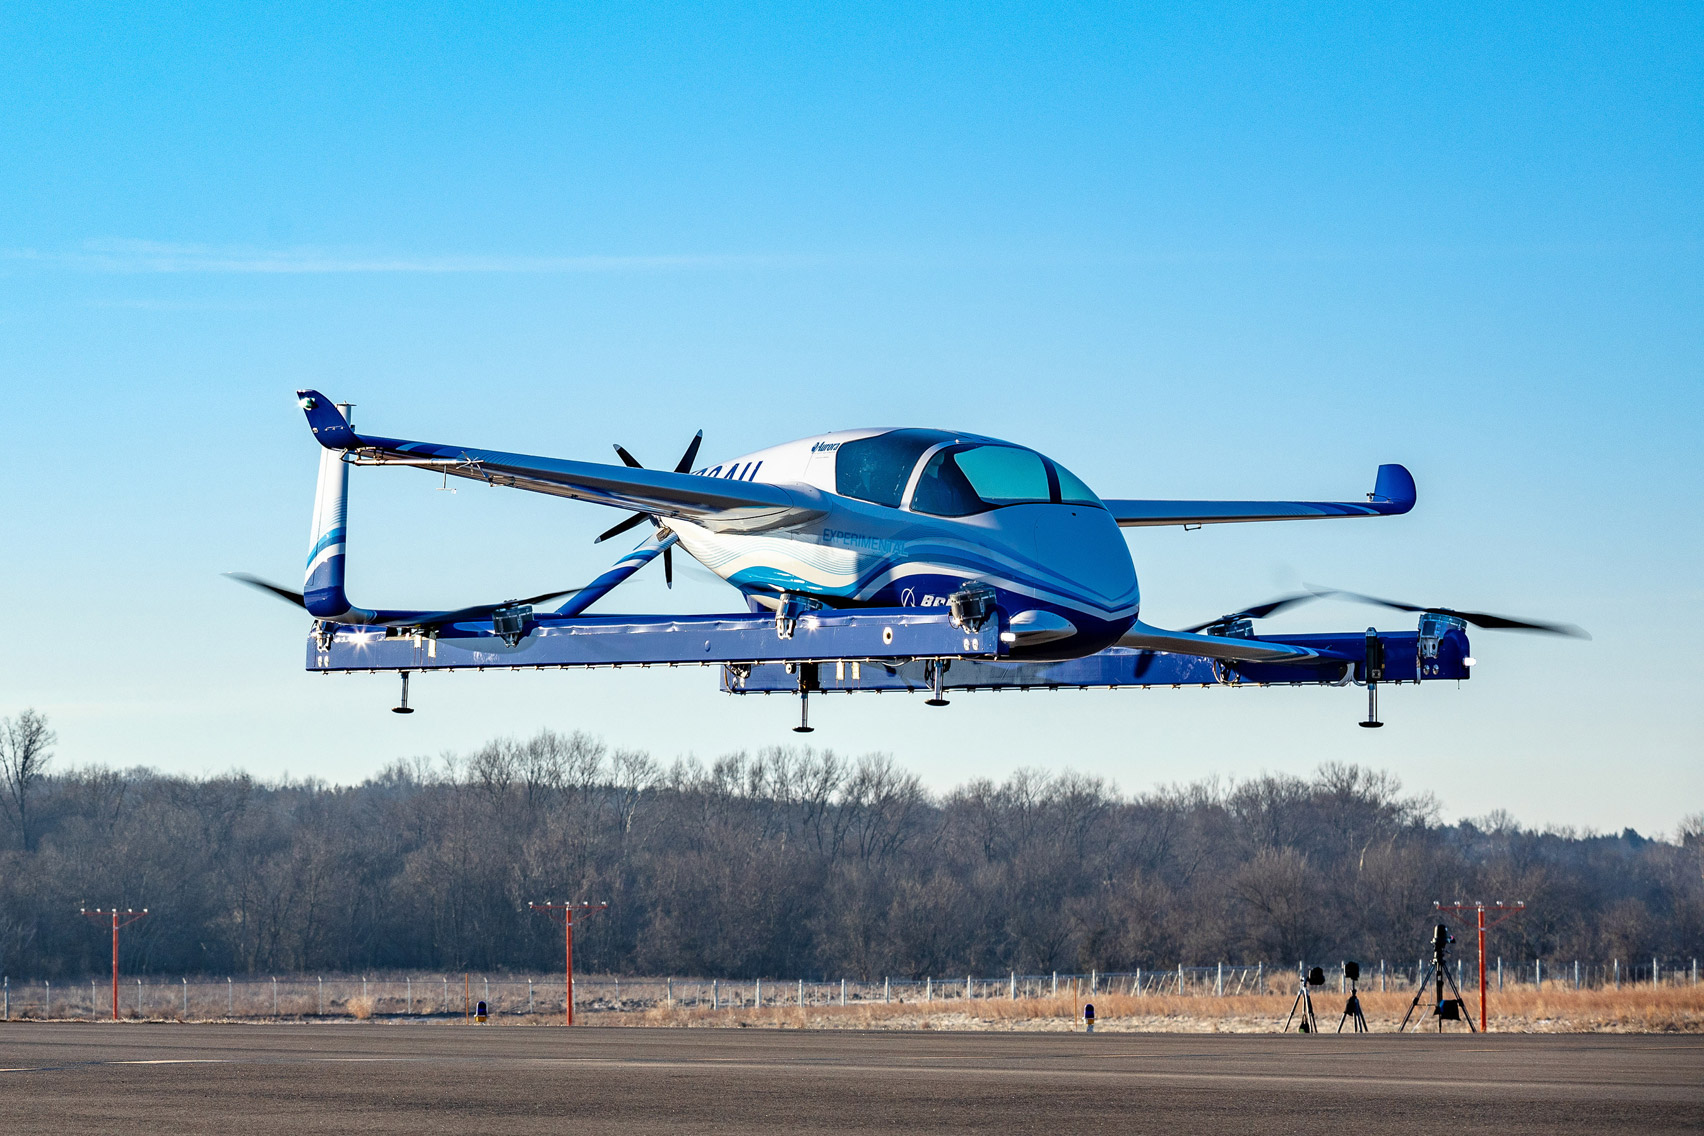 Boeing electric autonomous passenger drone – flying car